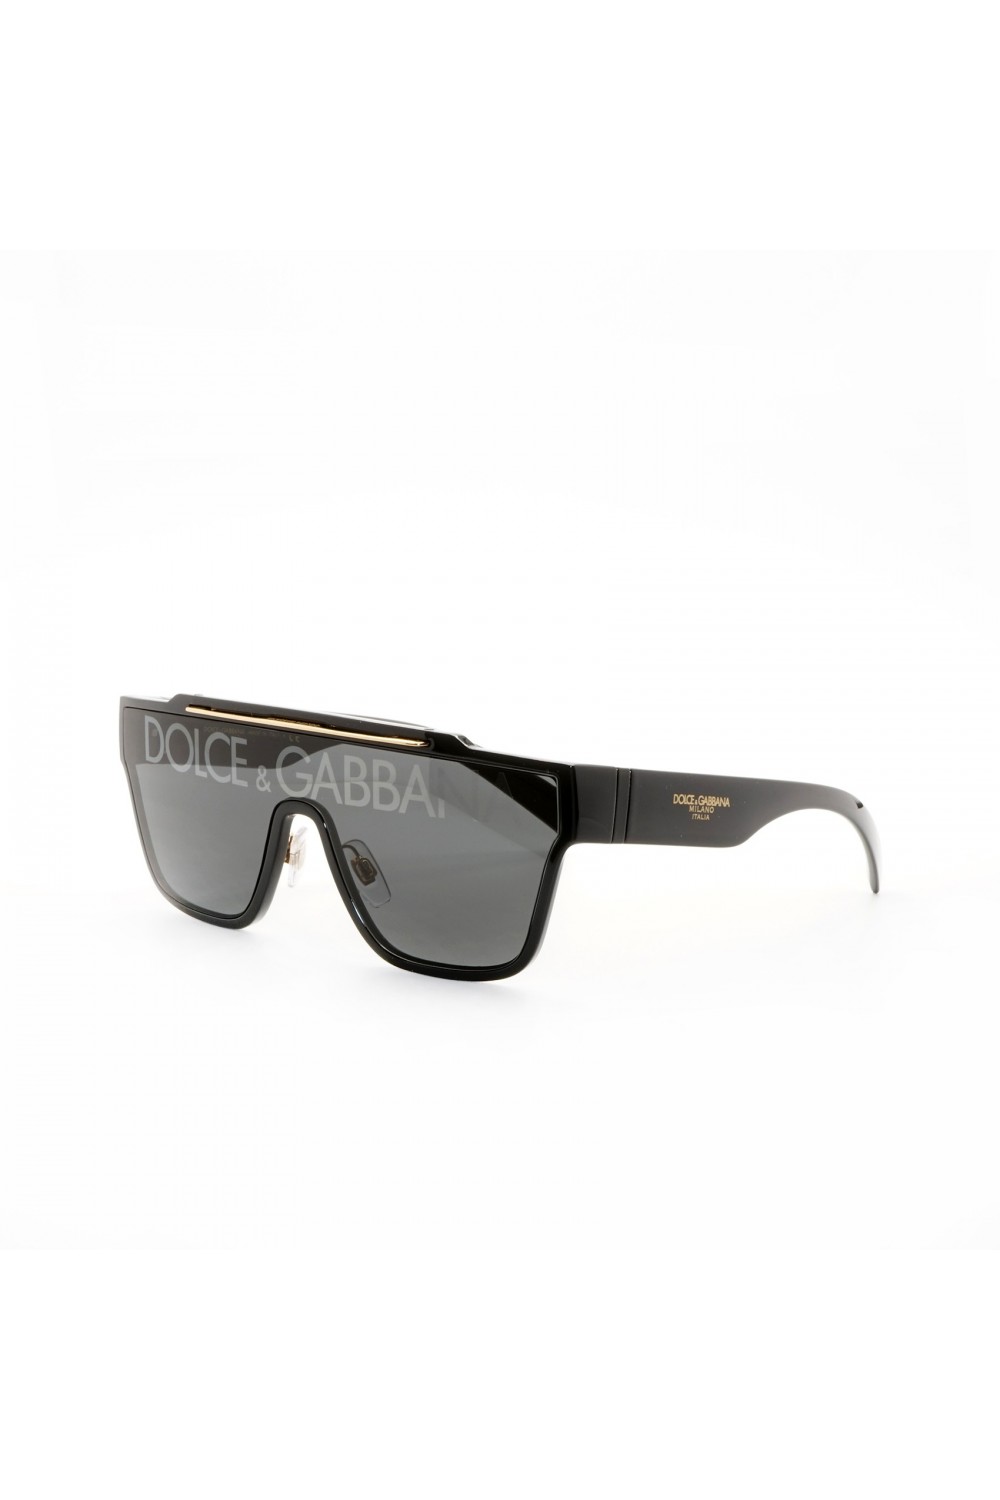 Dolce&Gabbana - Occhiali da sole in celluloide squadrati per uomo nero - DG6125